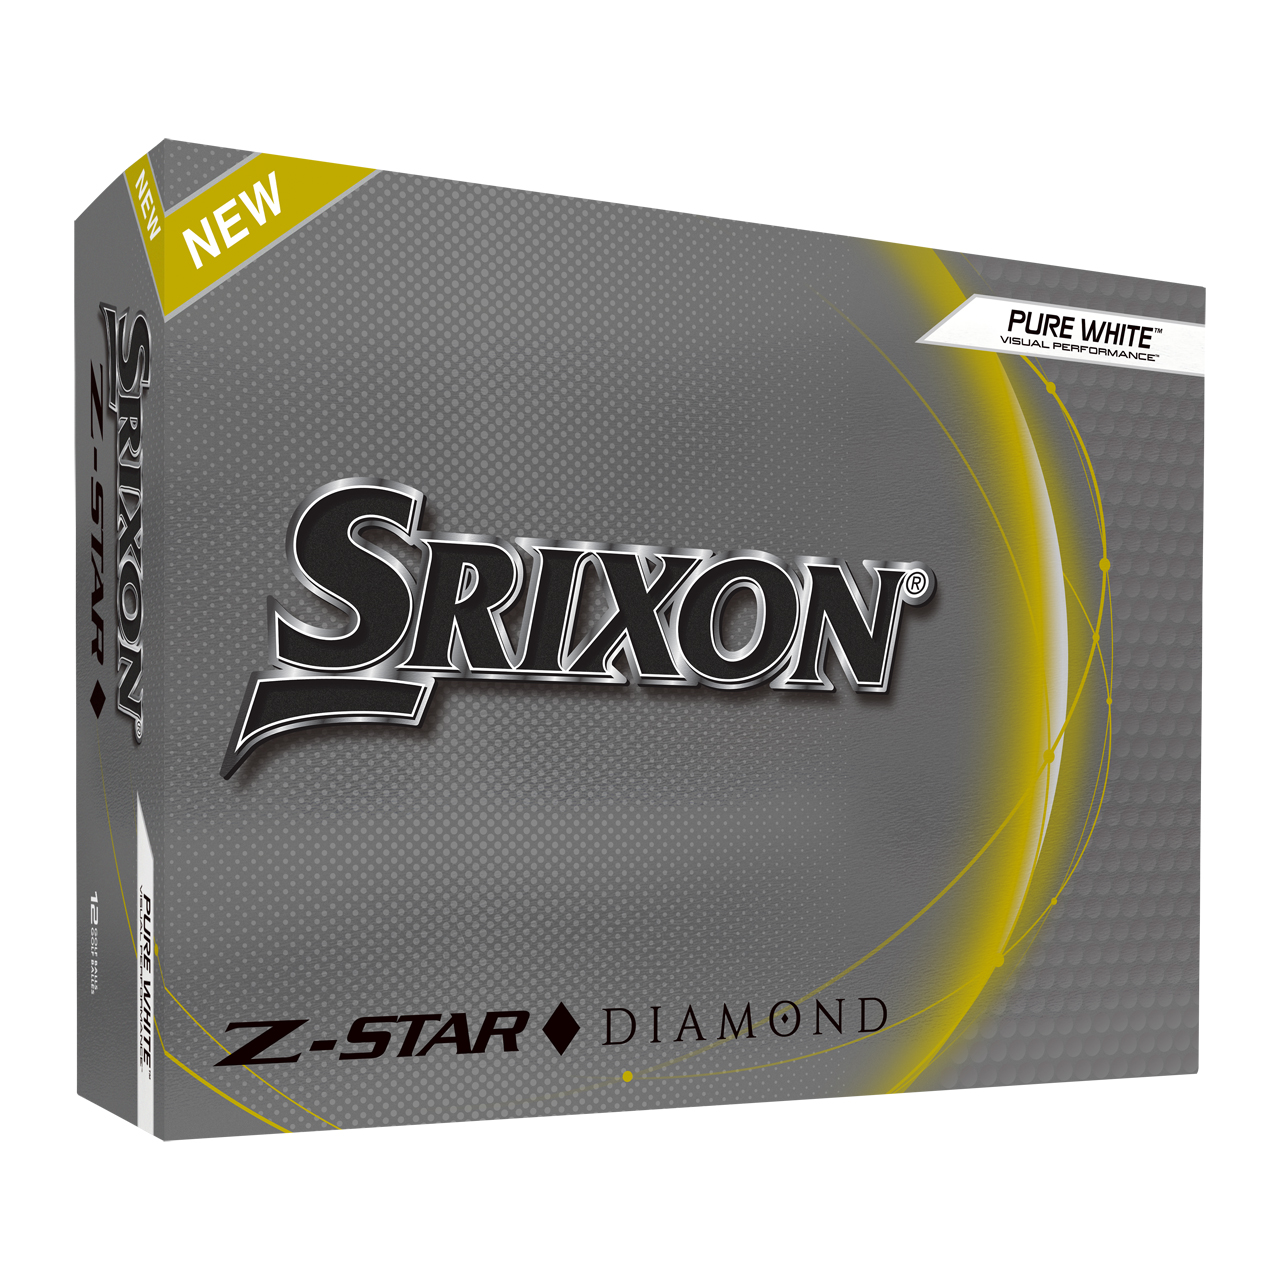 Z-Star Diamond, Bälle 3-Pack - Wh